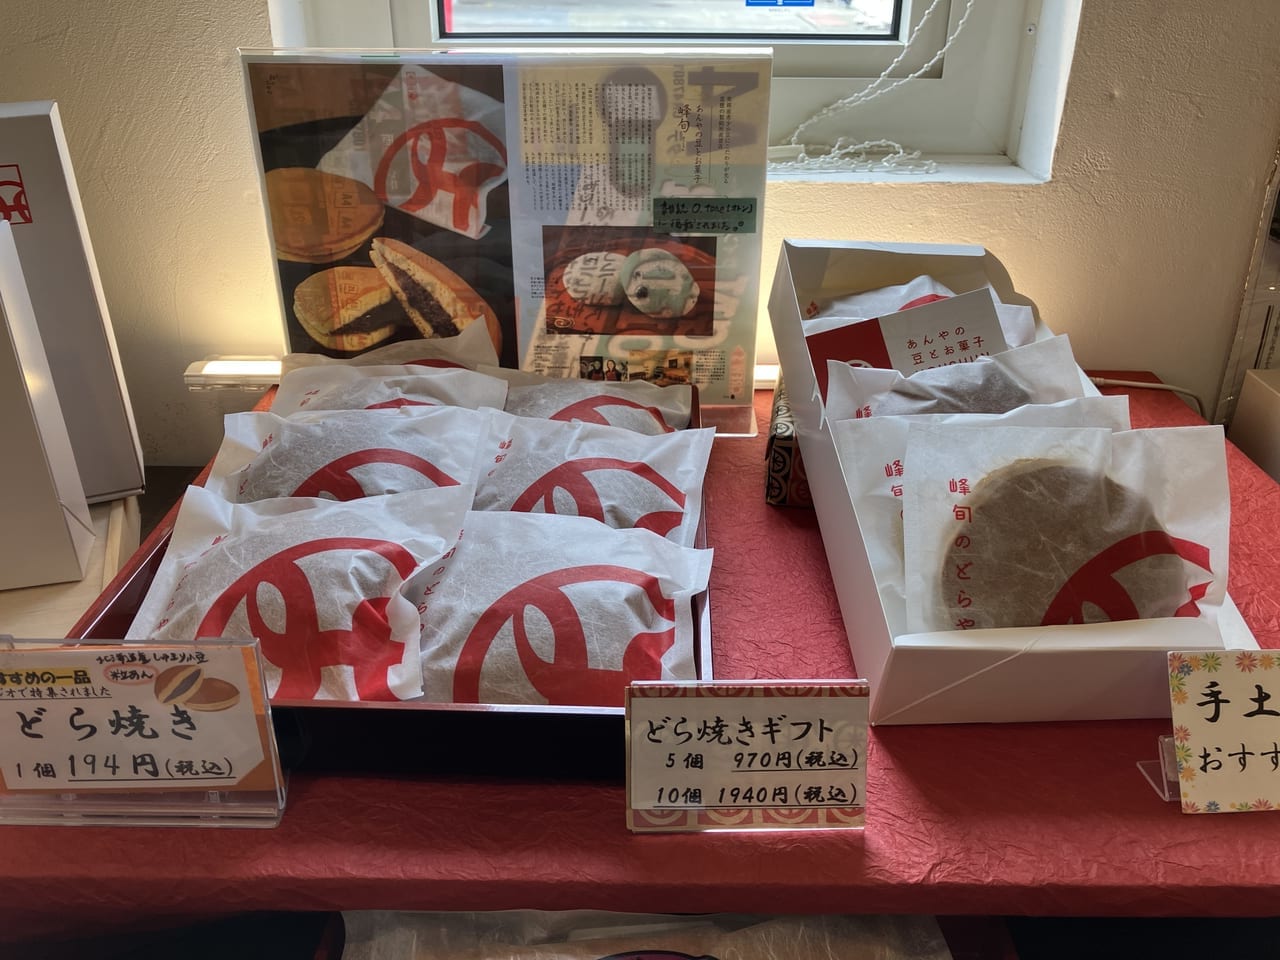 真っ赤なコンテナが目印です★コンテナで販売されている商品はとっても美味しい和菓子でした。